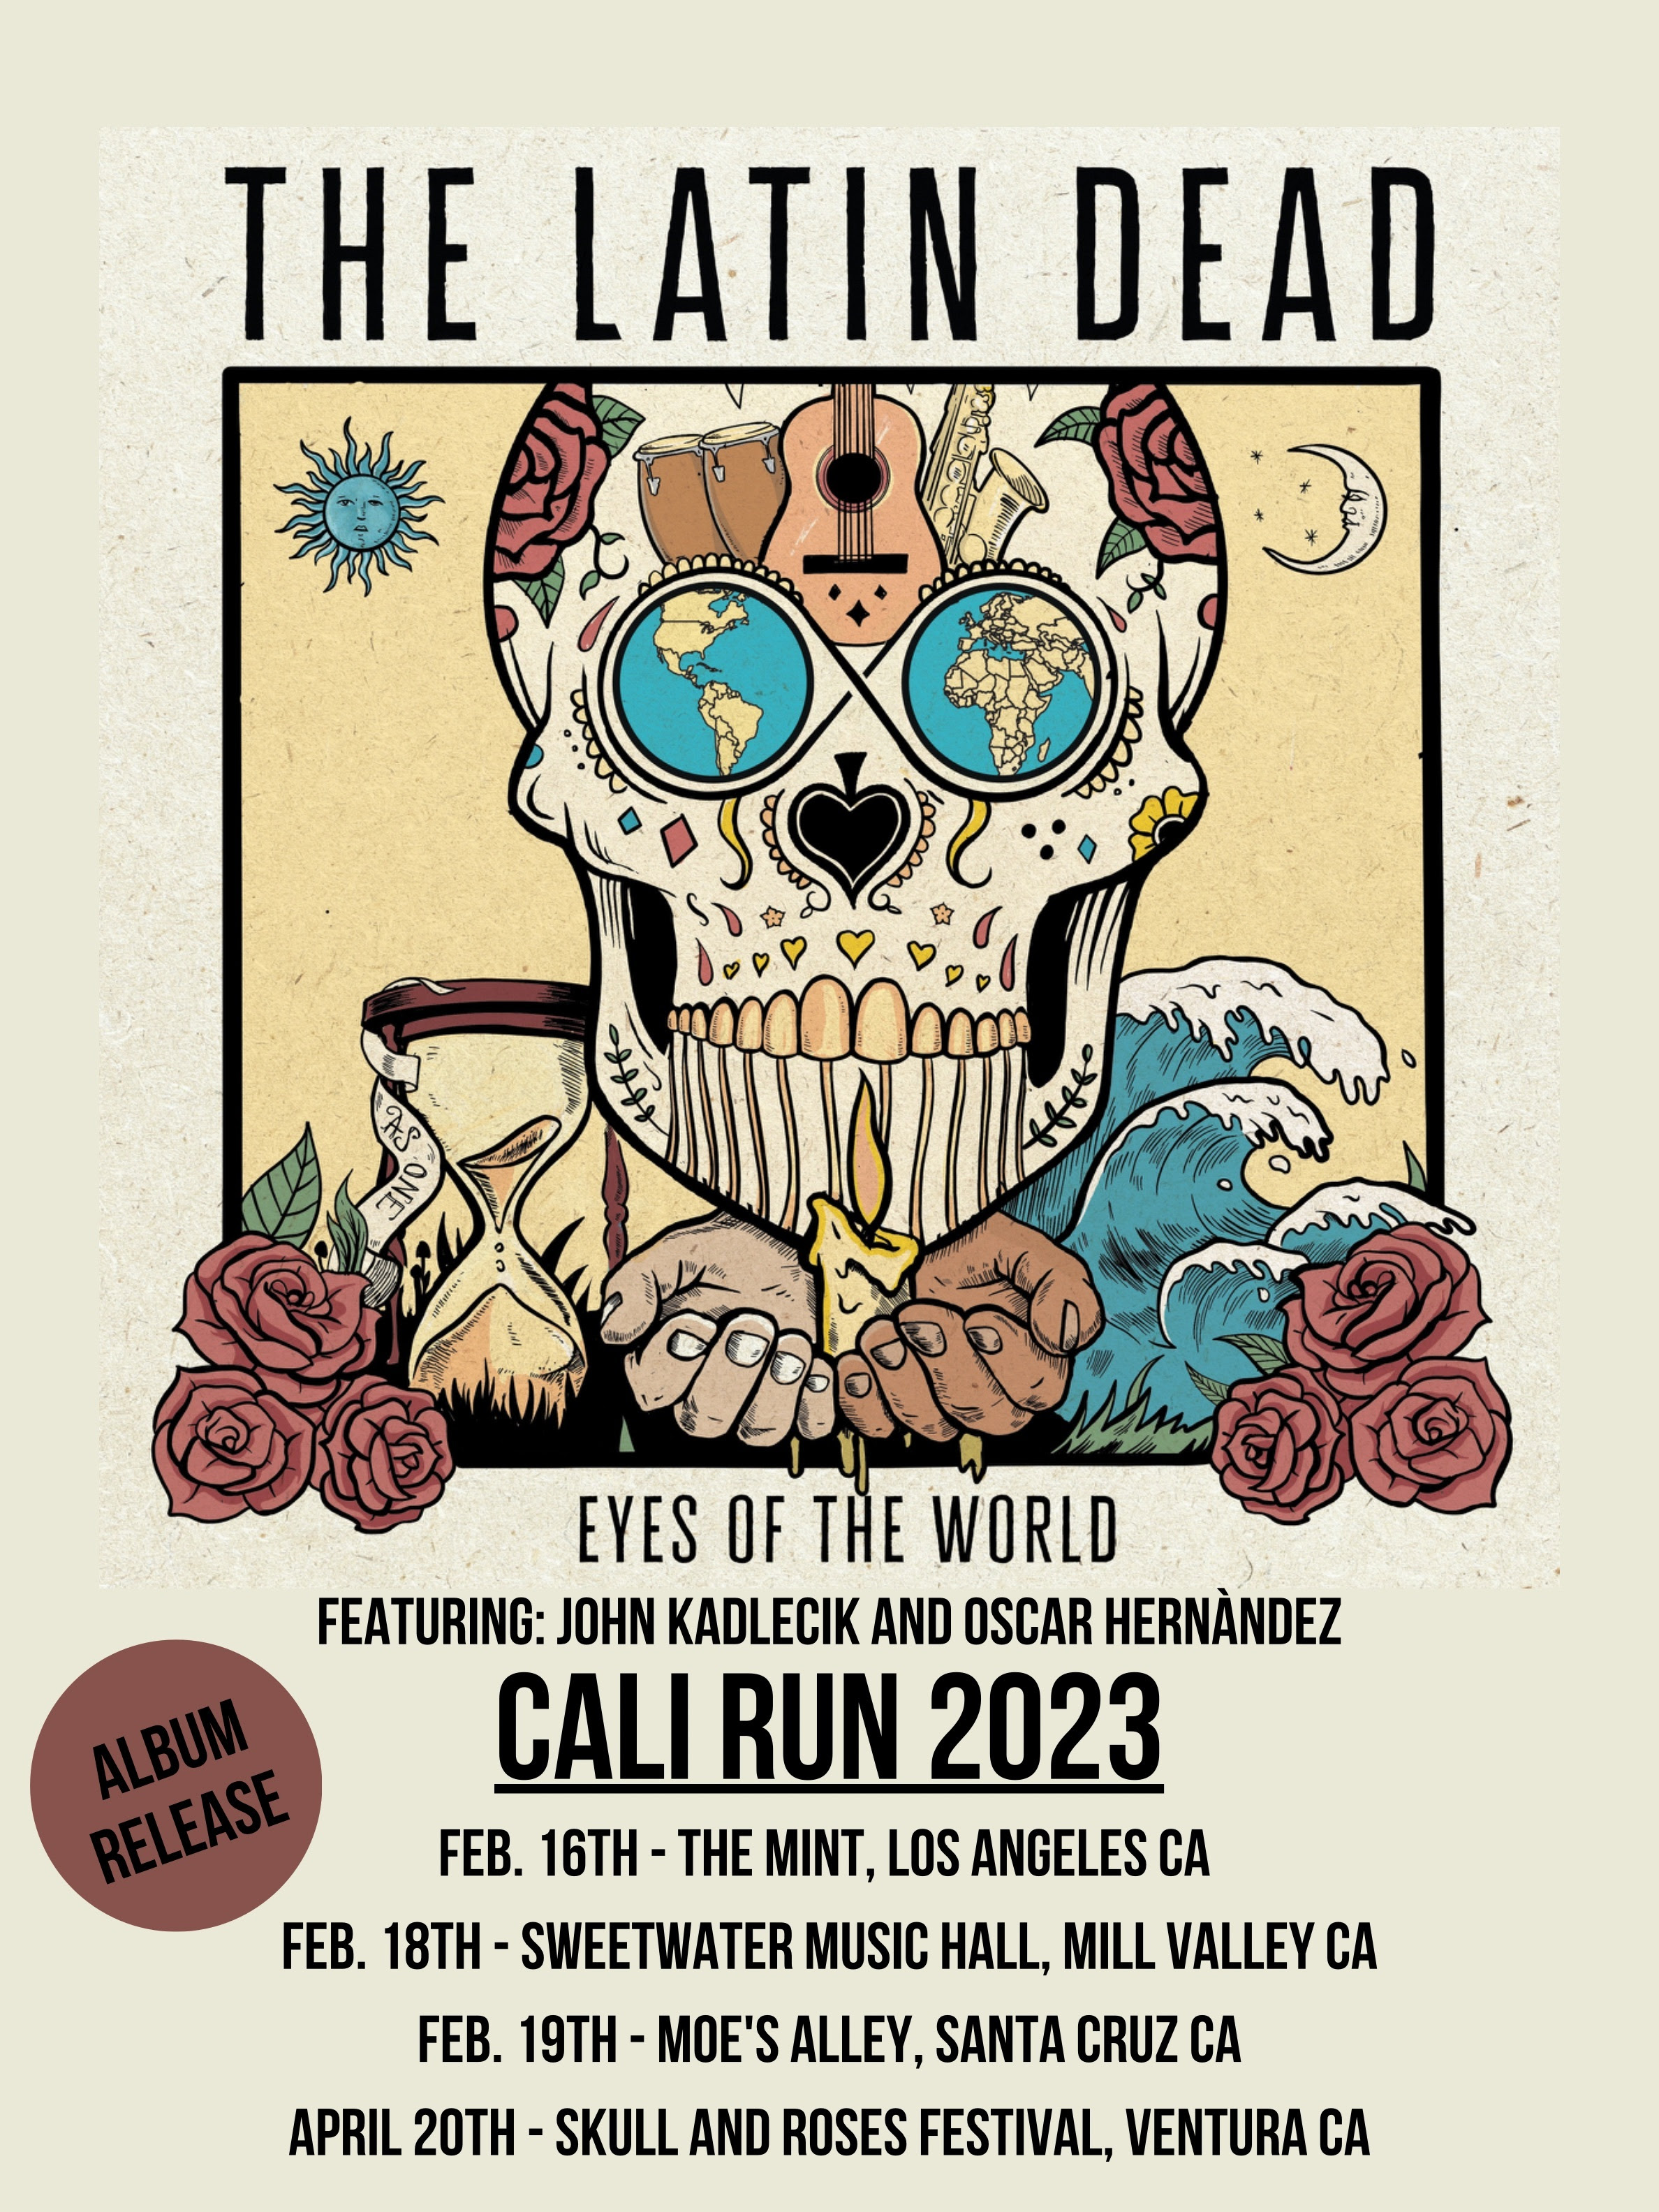 The Latin Dead ft. John Kadlecik & Oscar Hernandez